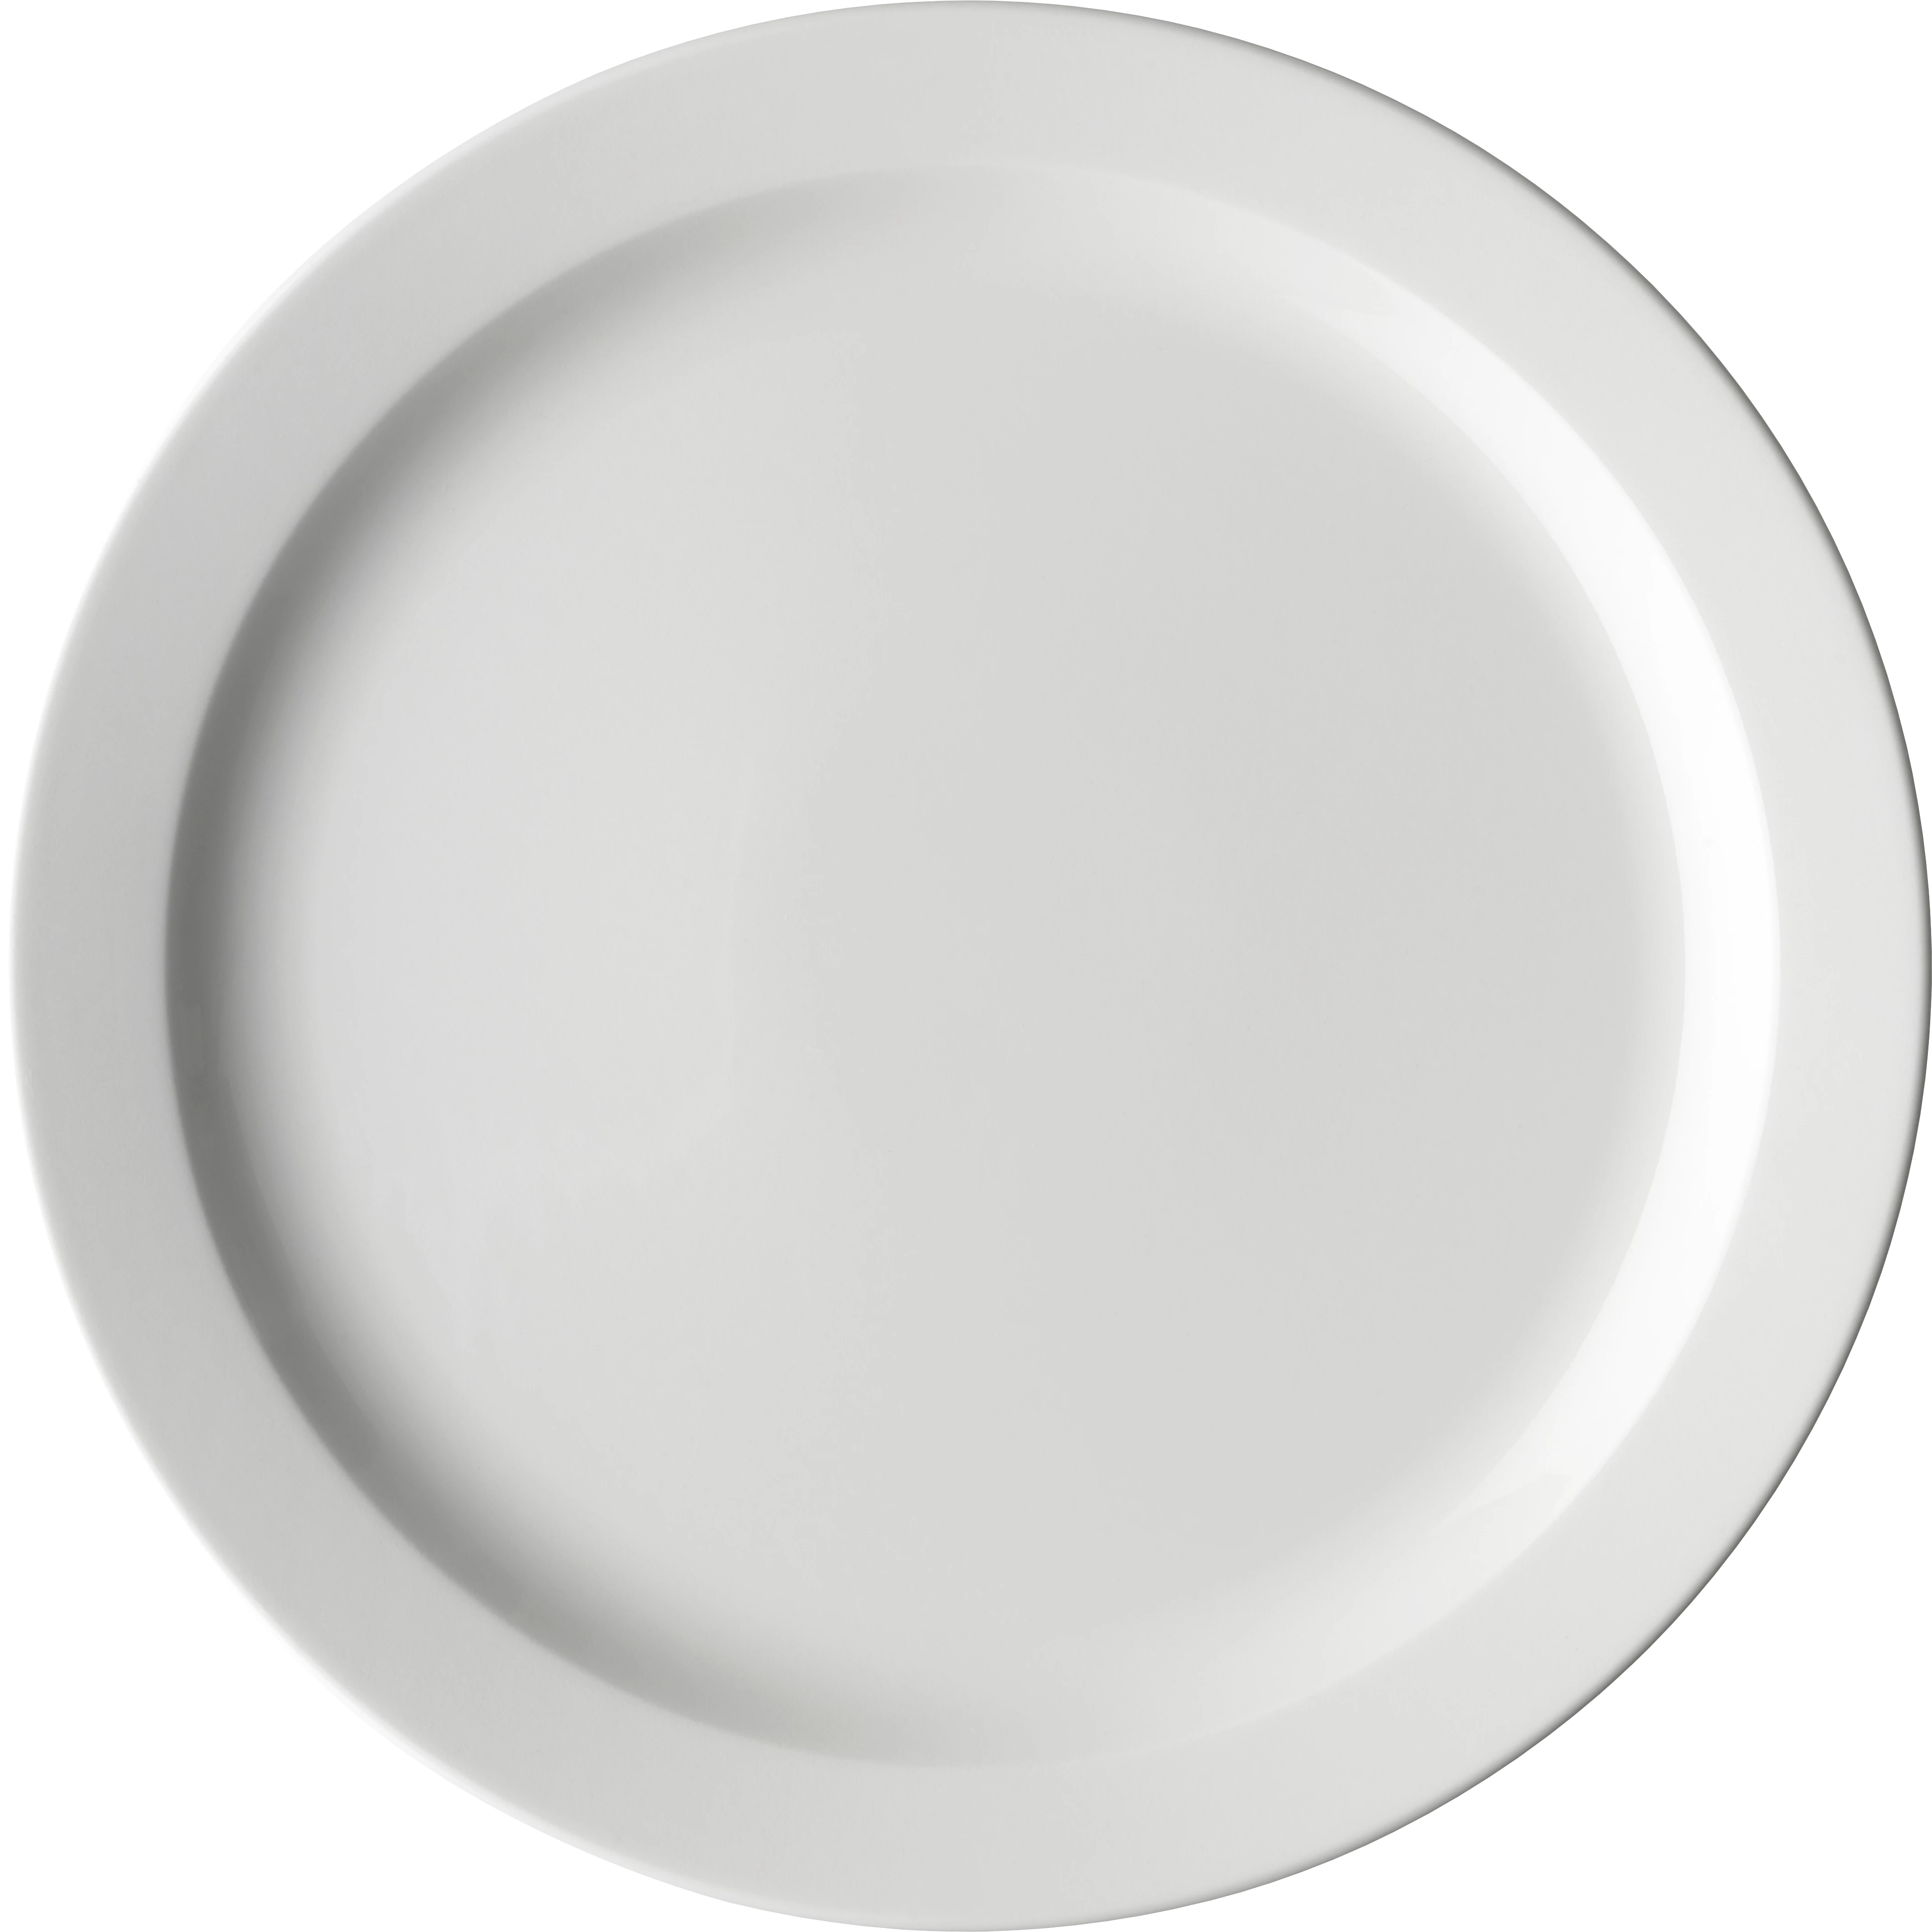 Figgjo Hvid flad tallerken med smal fane, ø26,5 cm